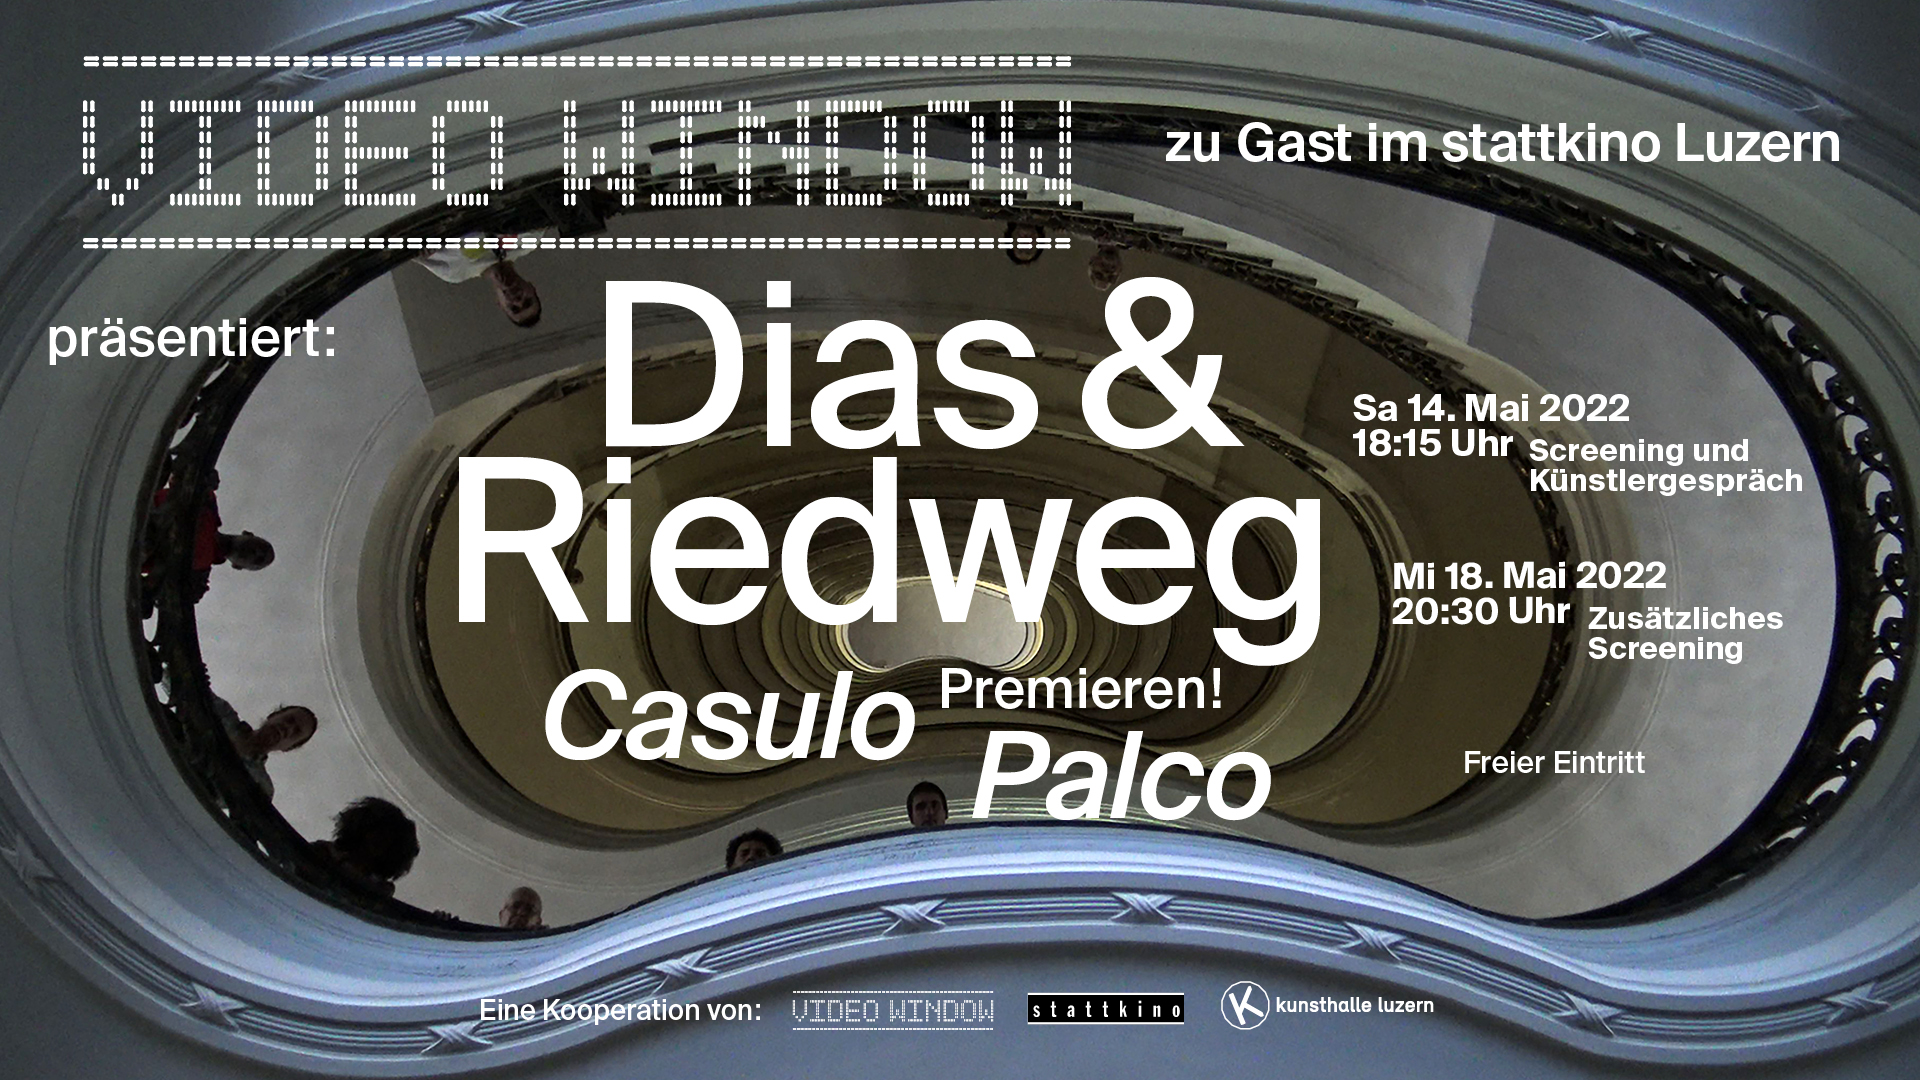 VIDEO WINDOW und Kunsthalle Luzern präsentieren: Dias & Riedweg